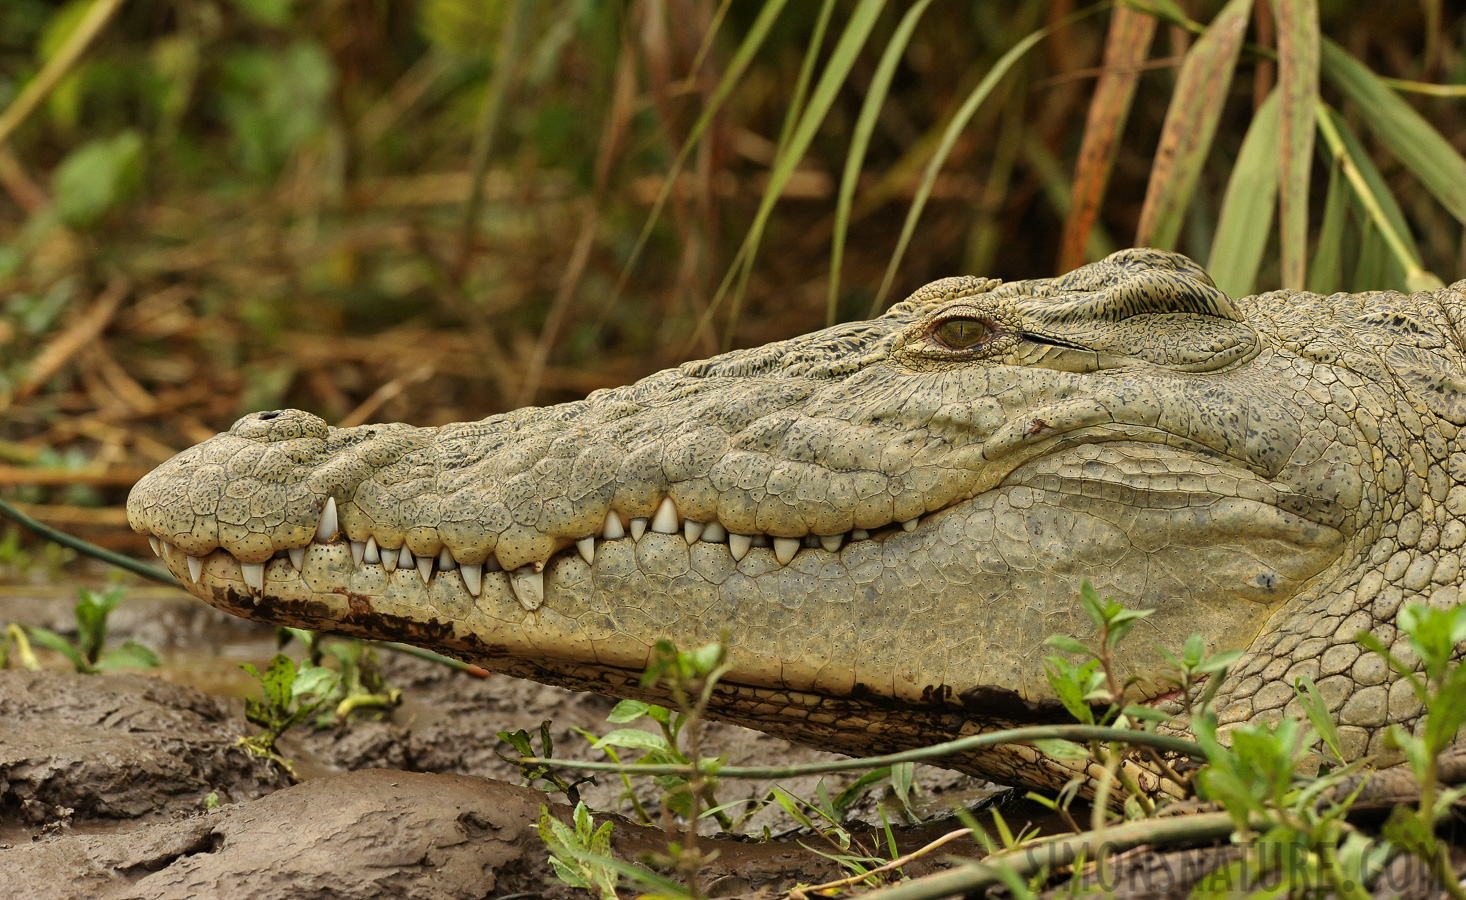 Crocodylus niloticus pauciscutatus [280 mm, 1/1250 sec at f / 9.0, ISO 2000]